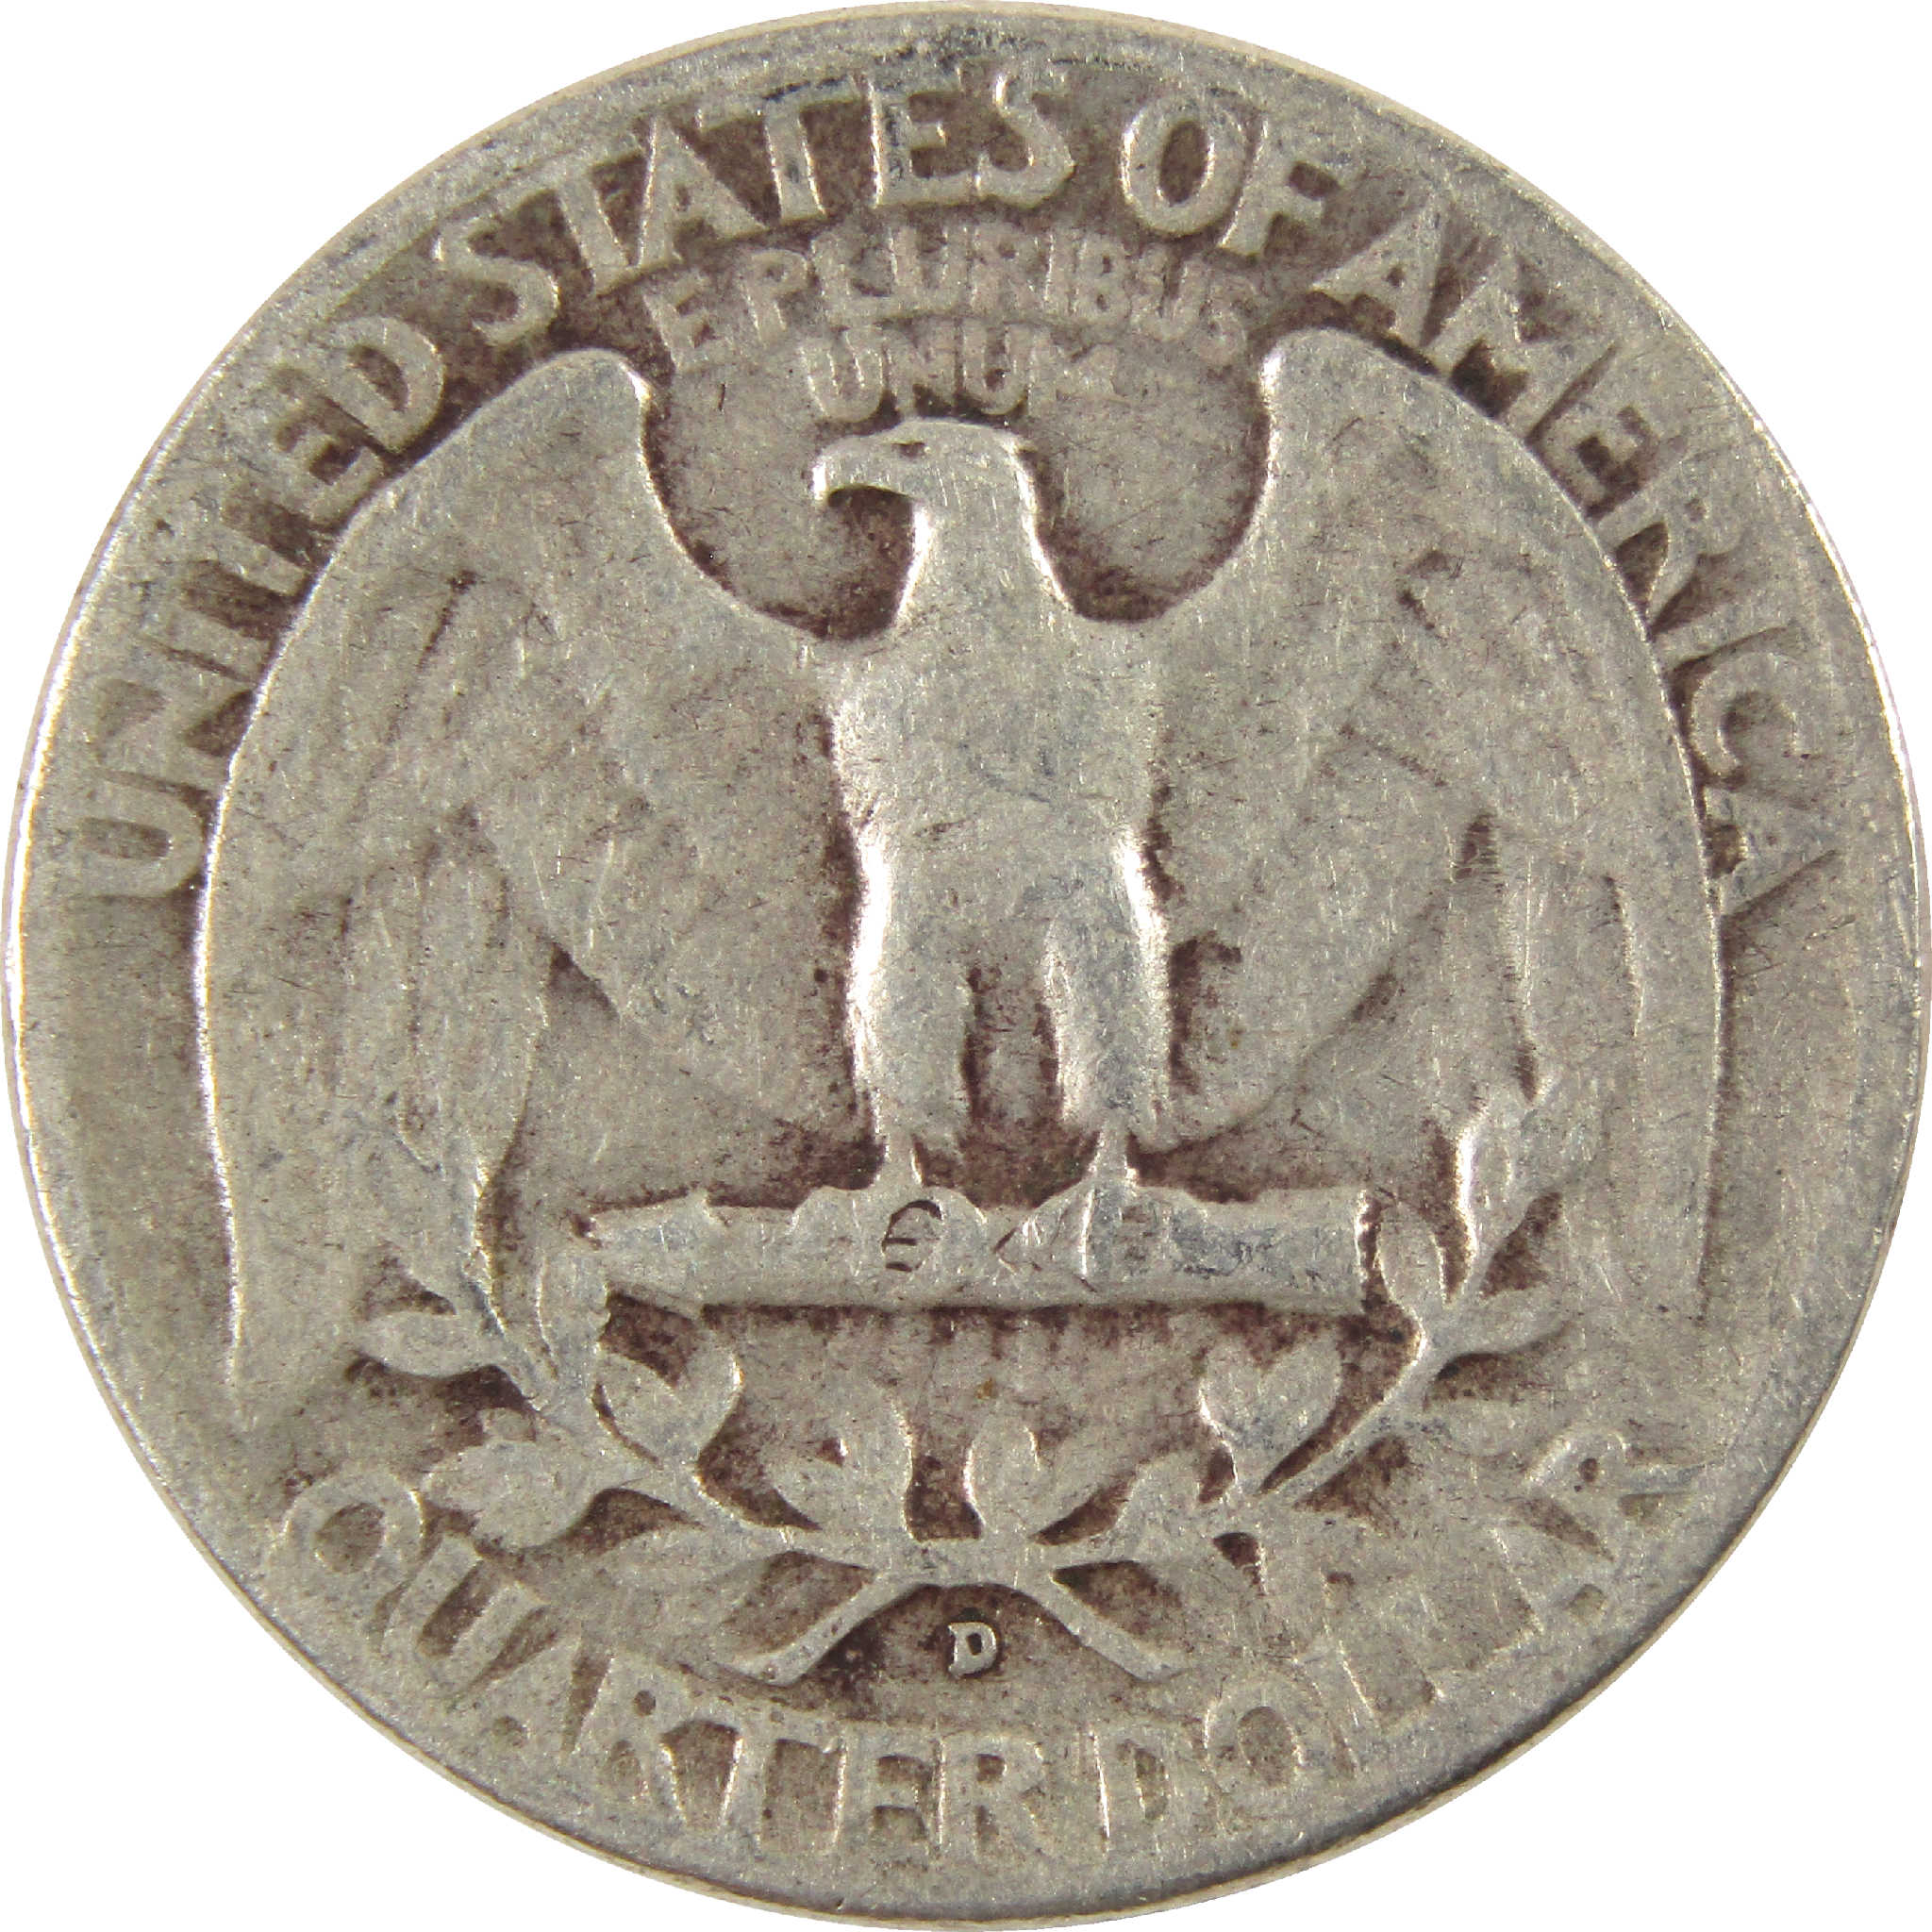 1952 D Washington Quarter VG Very Good Silver 25c Coin